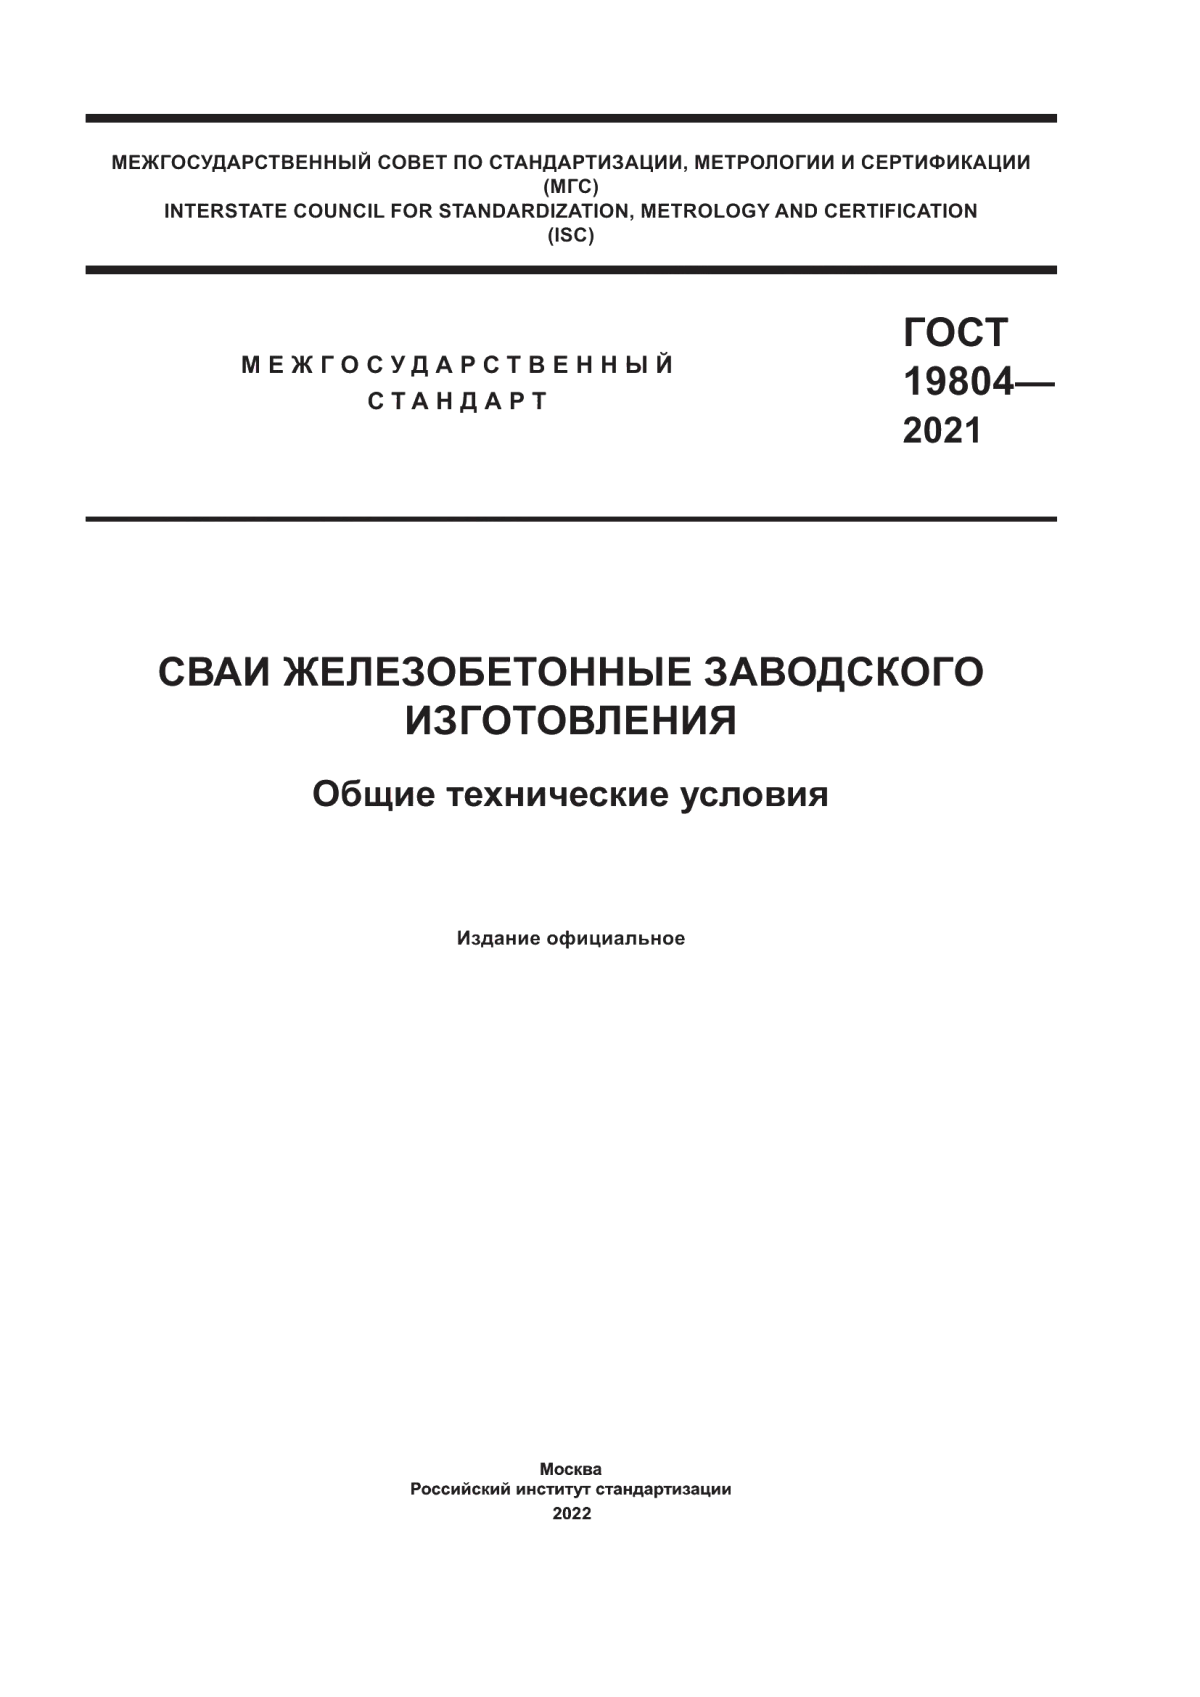 ГОСТ 19804-2021 Сваи железобетонные заводского изготовления. Общие технические условия